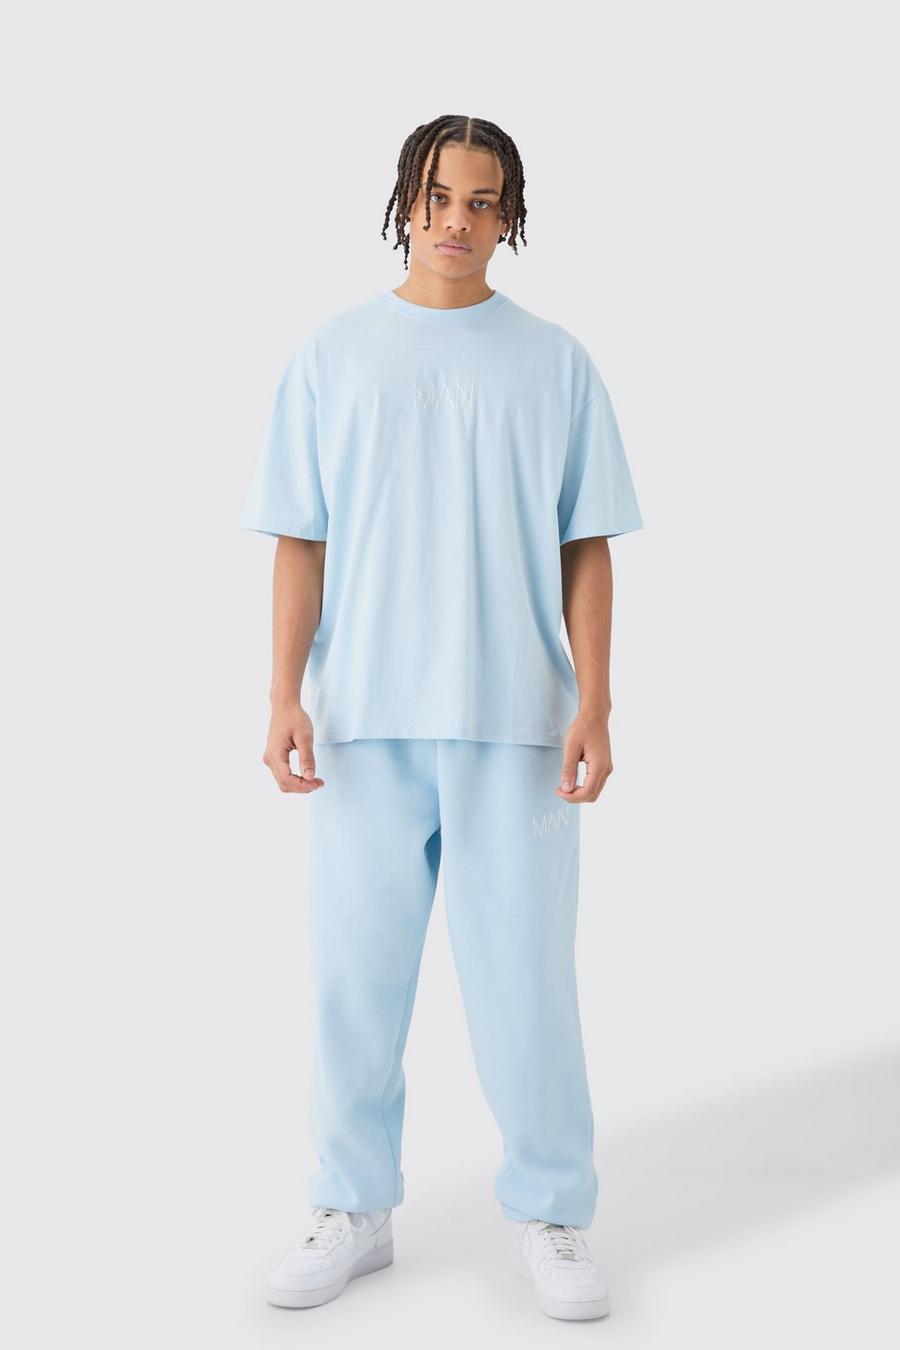 Ensemble oversize avec t-shirt et jogging - MAN, Light blue